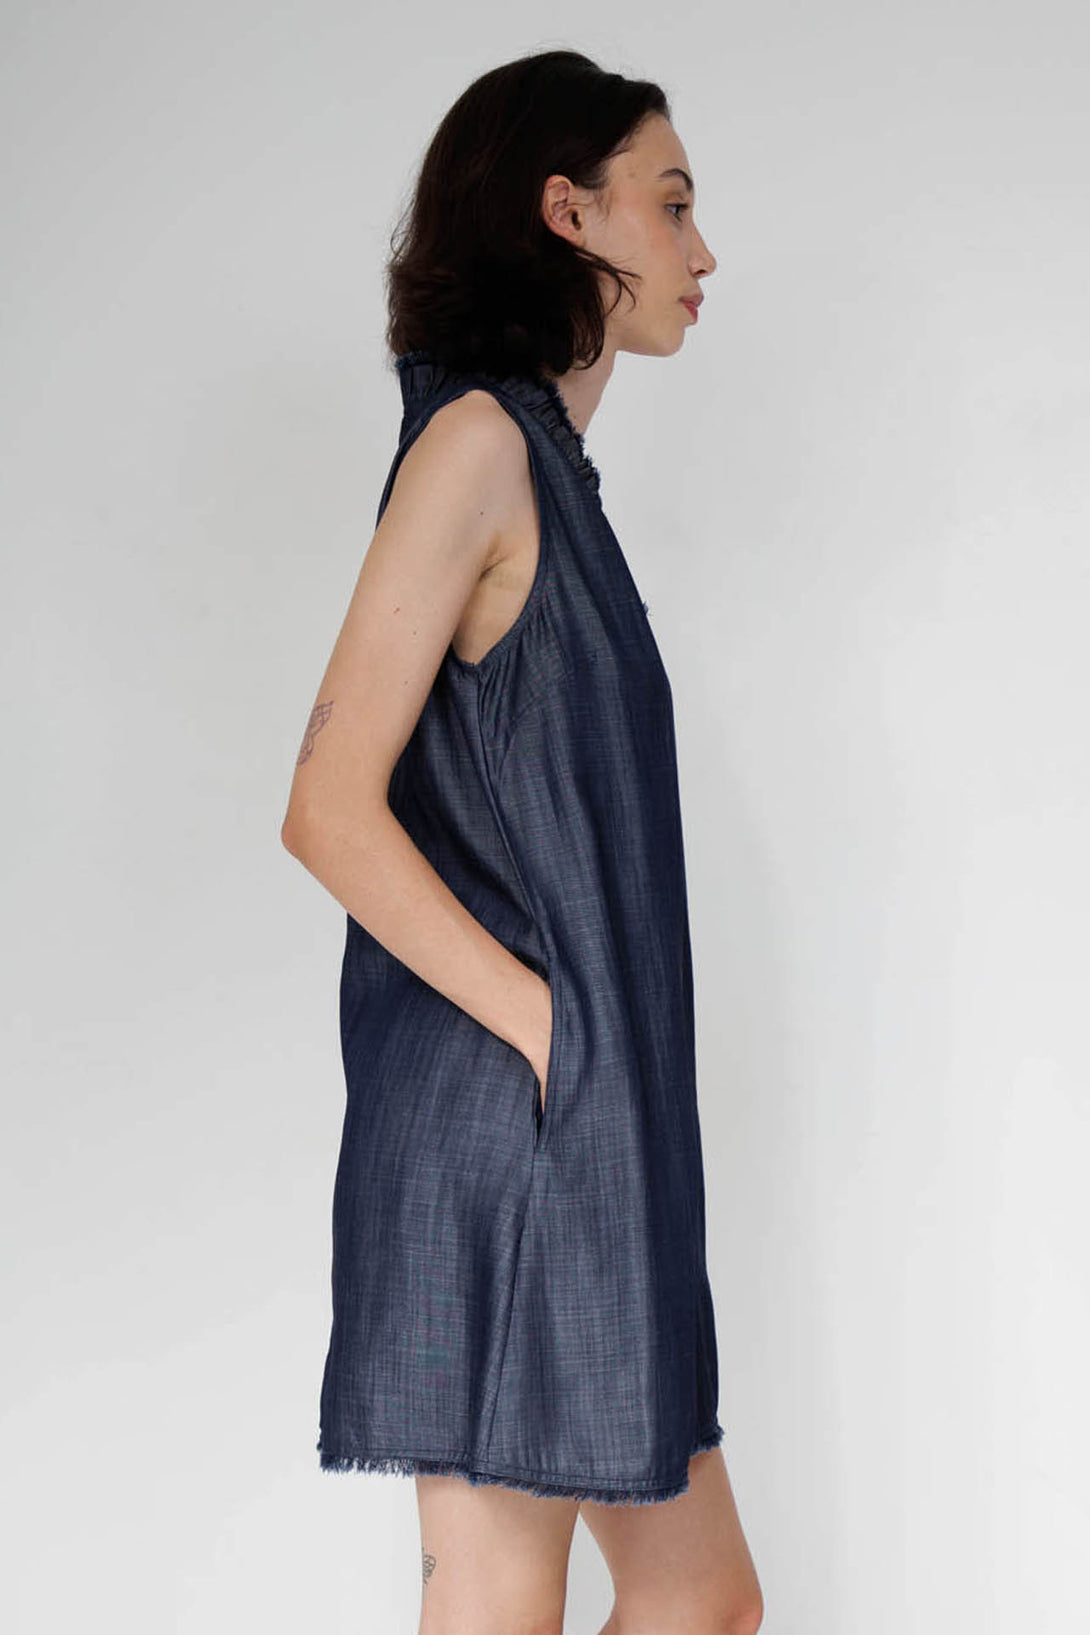 jeans dress for women, sleeveless denim dress, HT 360 Collective, dark denim dress, denim on denim outfit,